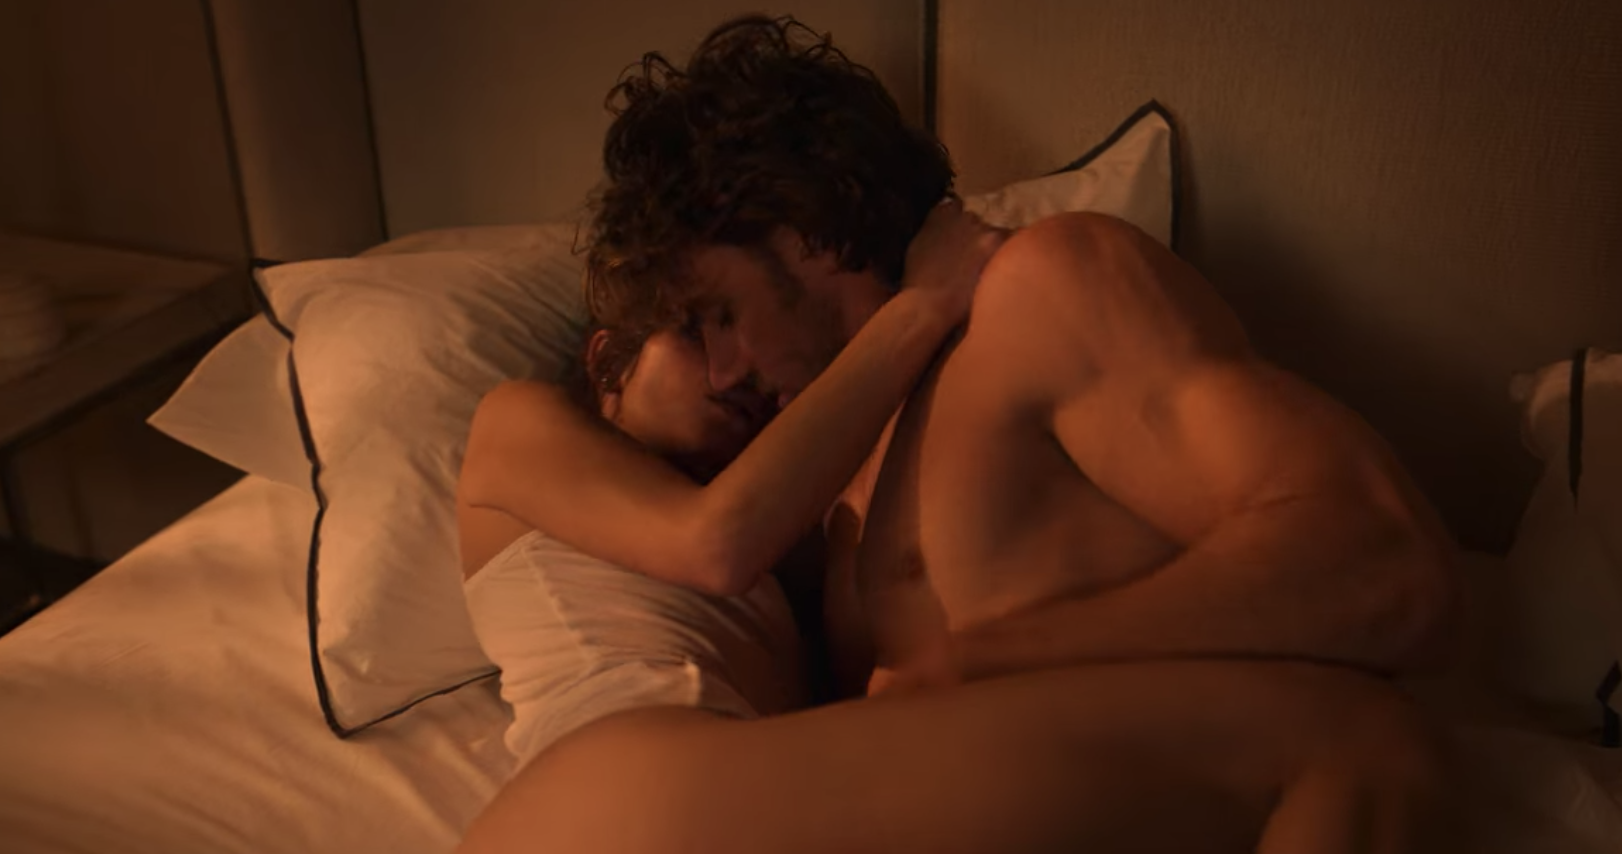 Hot sex scenes watch